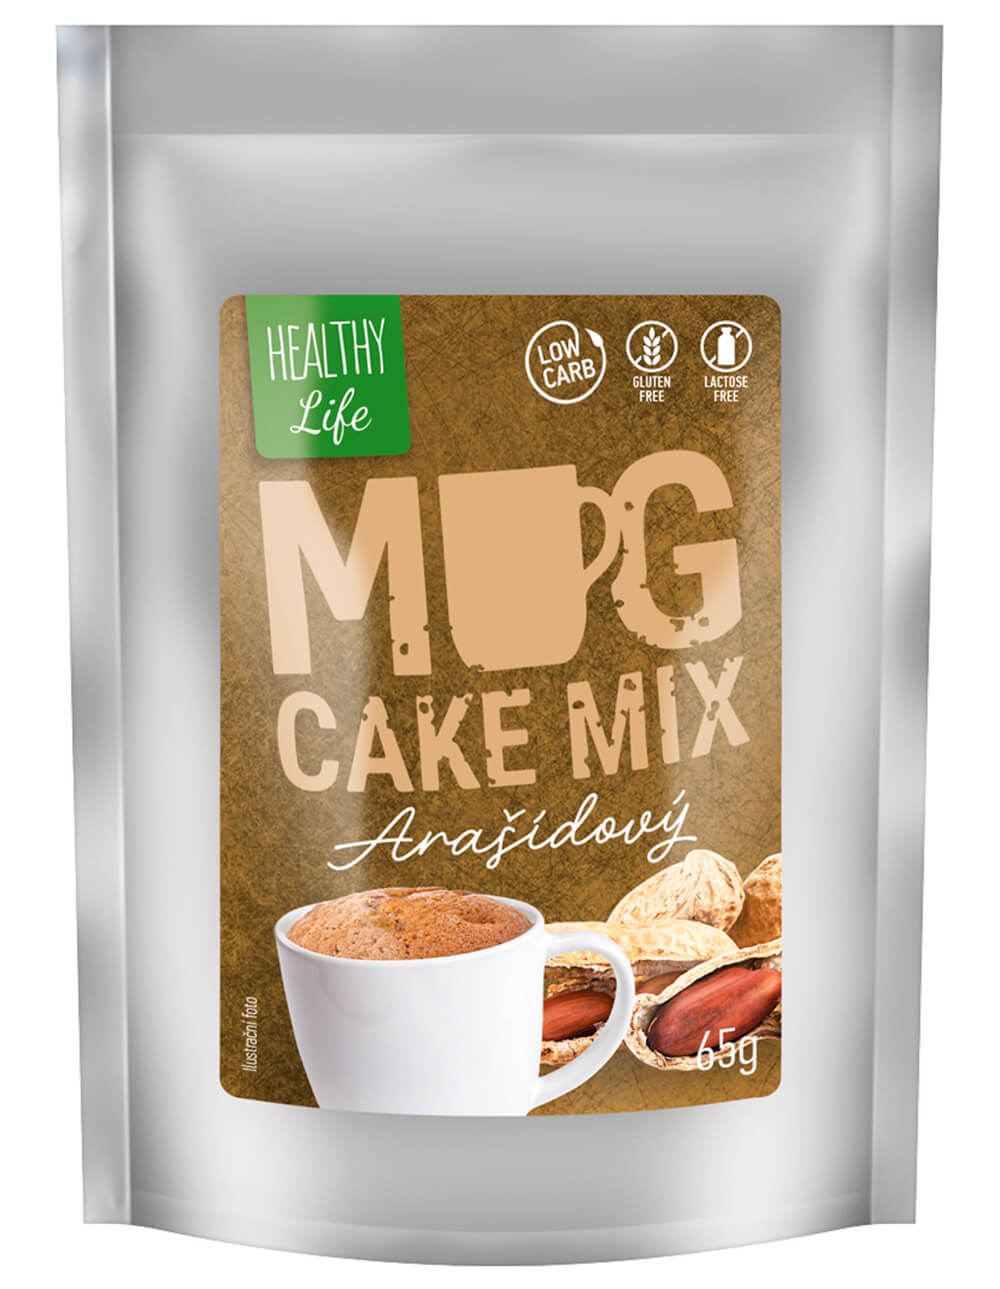 MKM Pack Low carb mug cake arašídový 65g